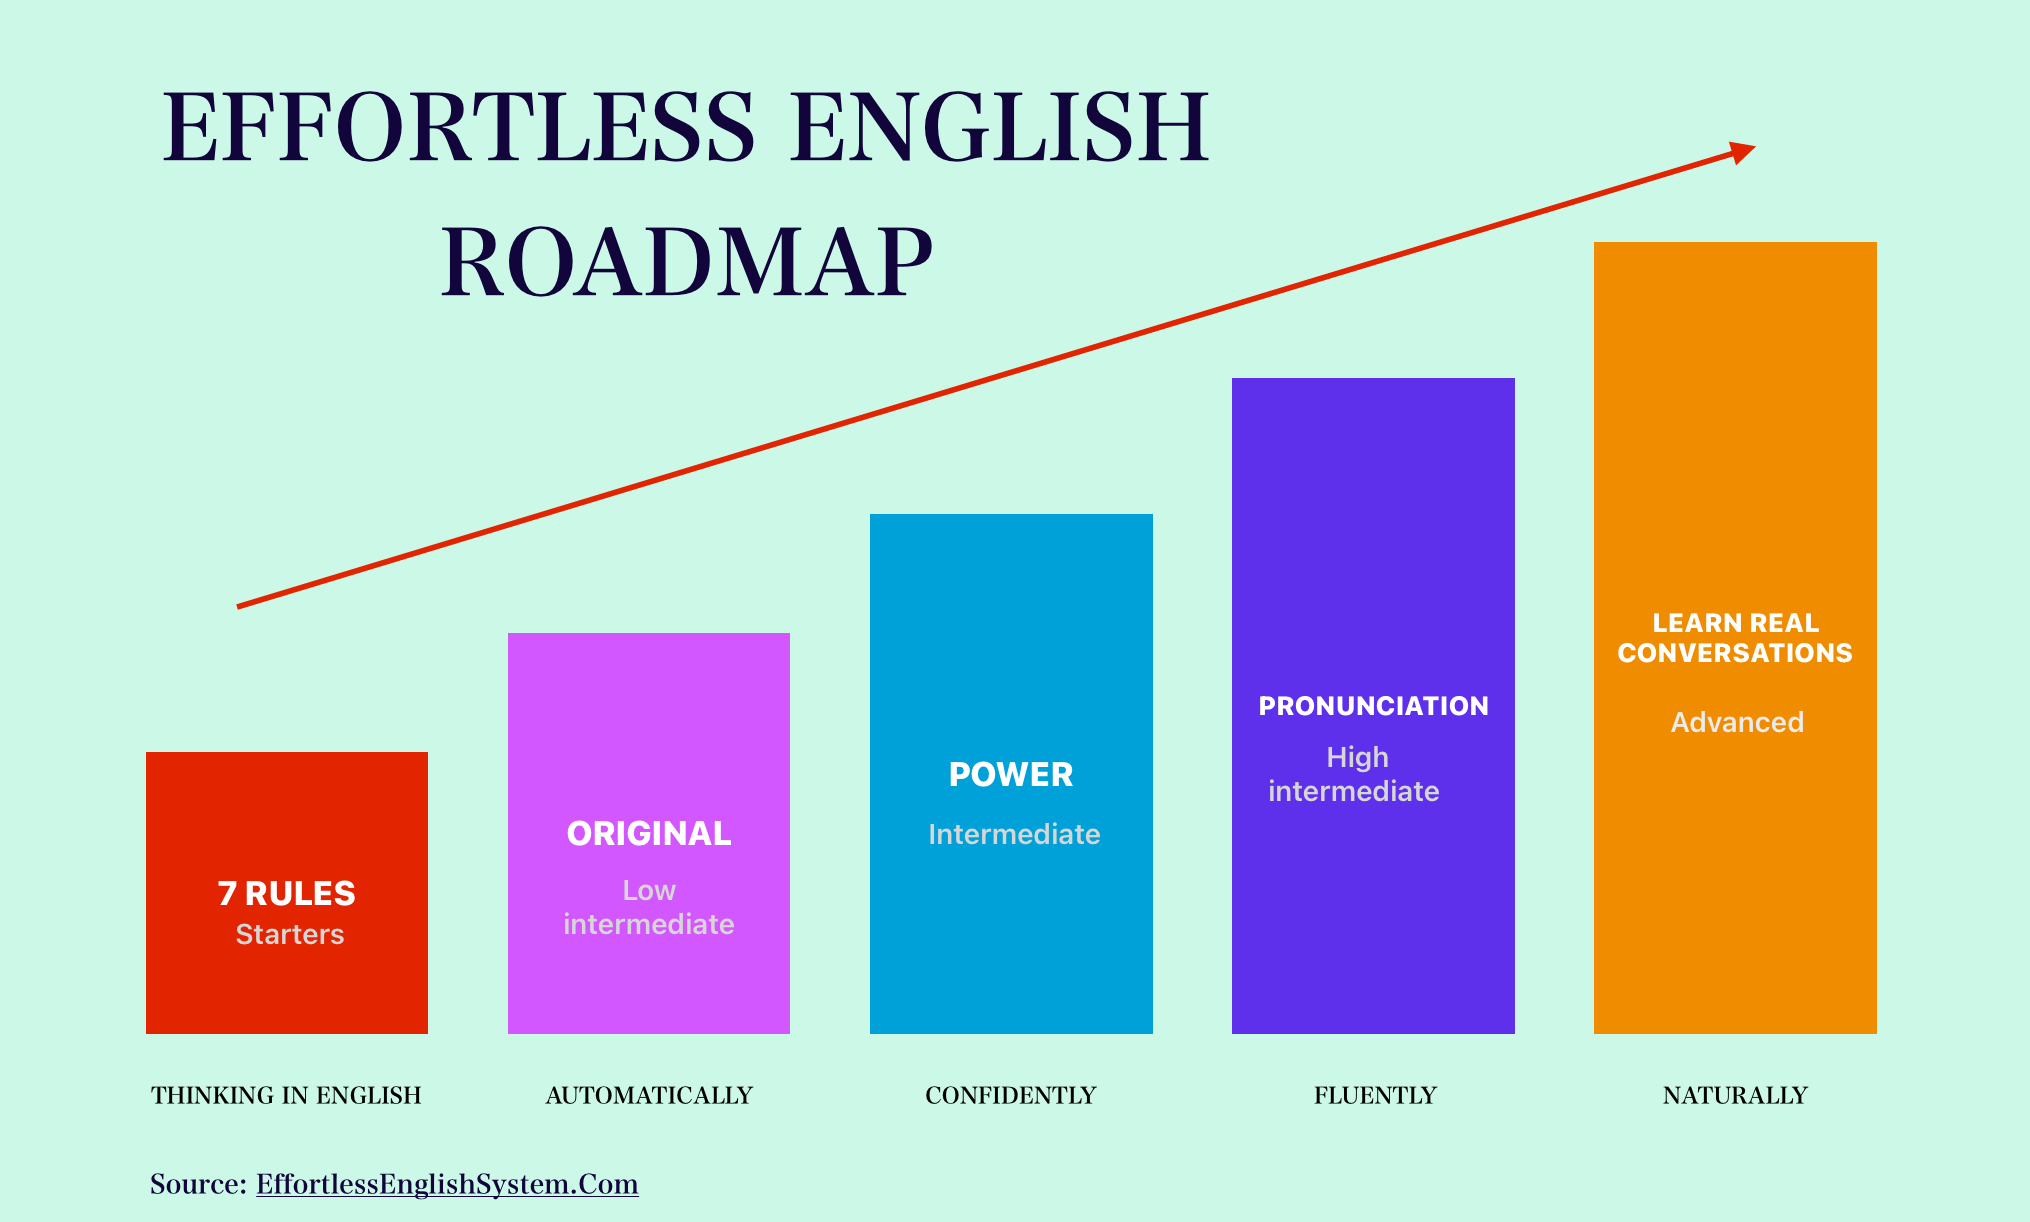 Lộ trình học Effortless English từ cơ bản đến nâng cao